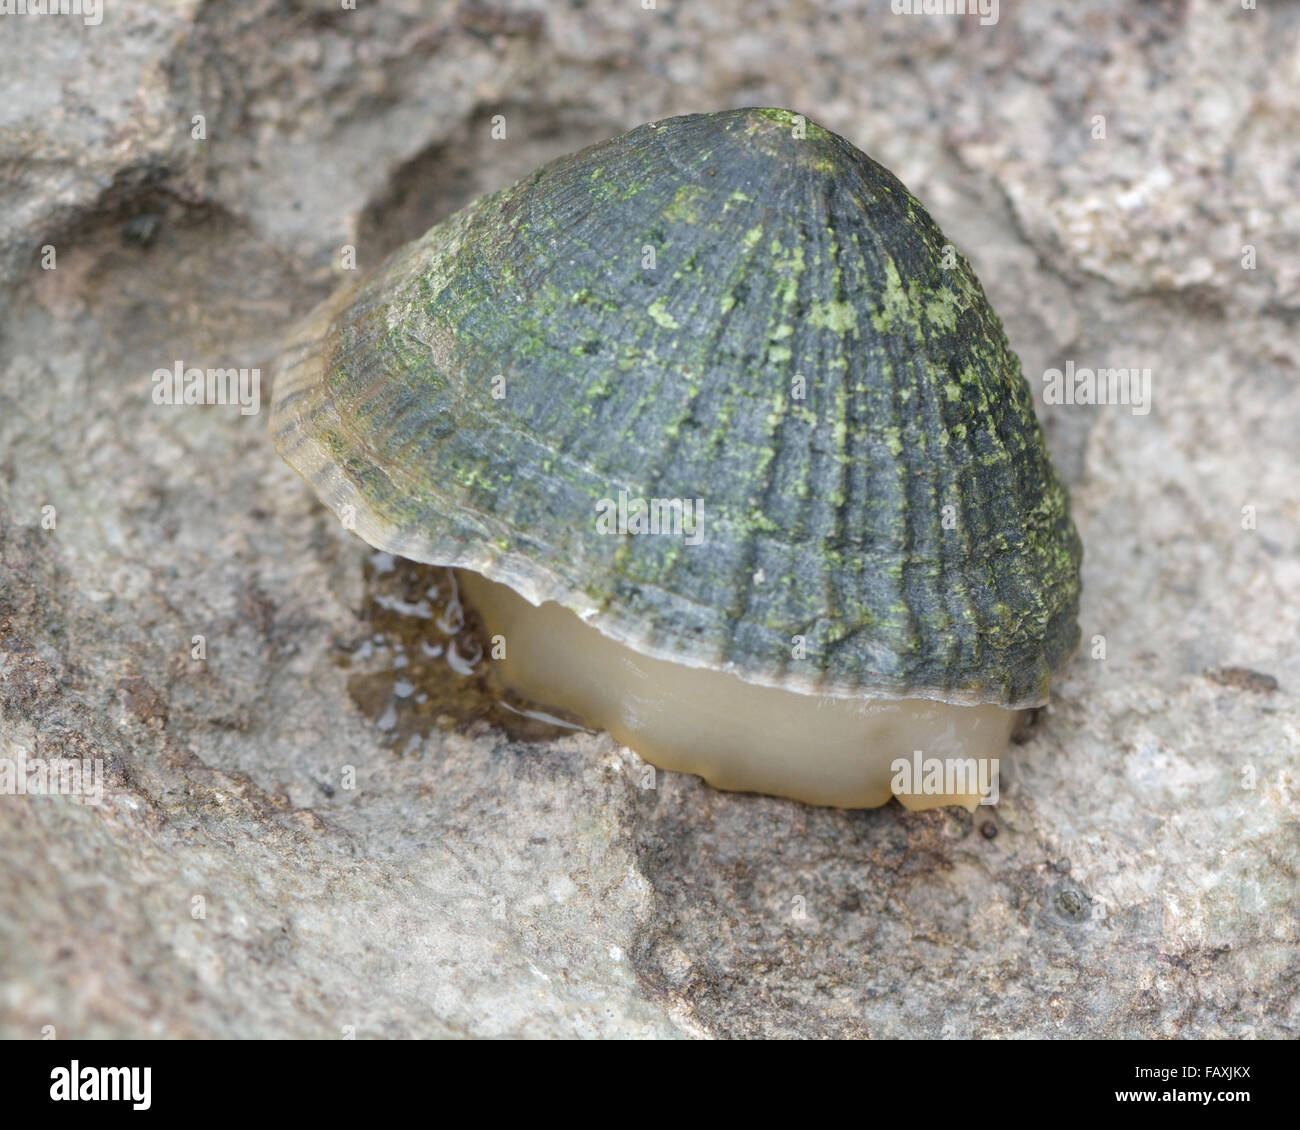 Limpet comune (Patella vulgata) sulla riva con piede esposta. Un mollusco gasteropode su roccia, con il sentiero di limo visibile Foto Stock